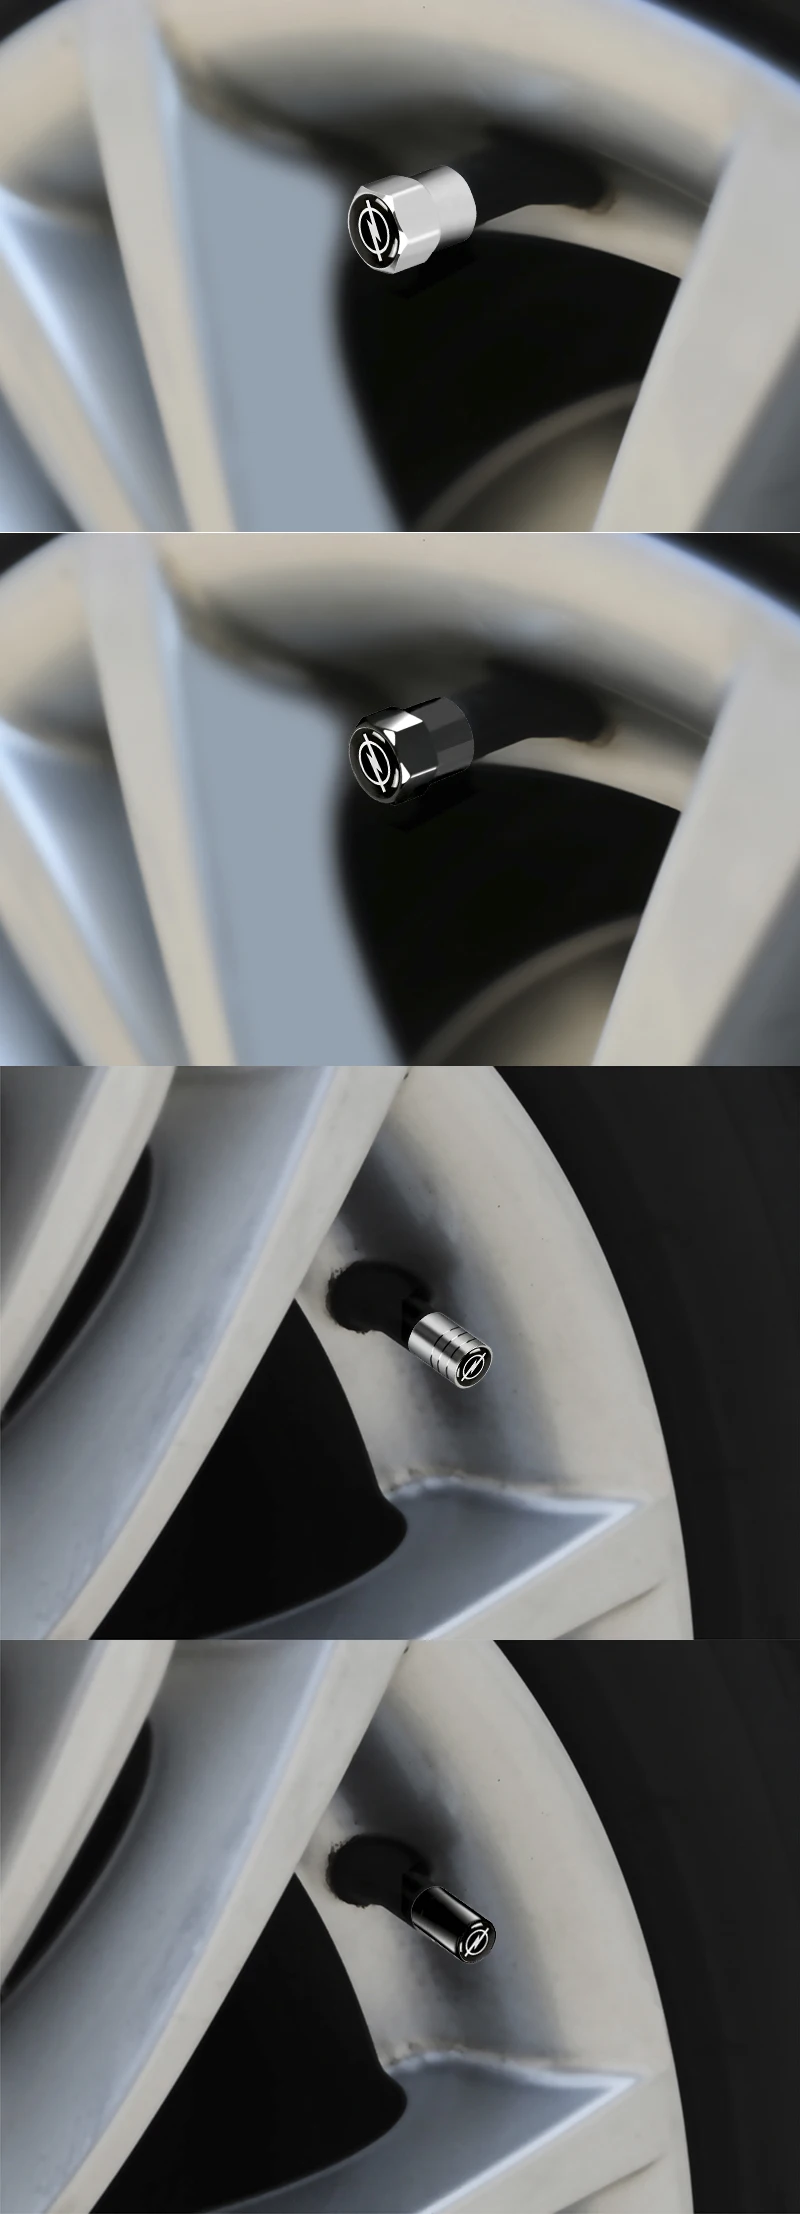 4 шт автомобиль-Стайлинг Авто колеса крышки стержня вентиля шины для OPEL Corsa Insignia Astra Antara Meriv Vectra Zafira комбо автомобильные аксессуары